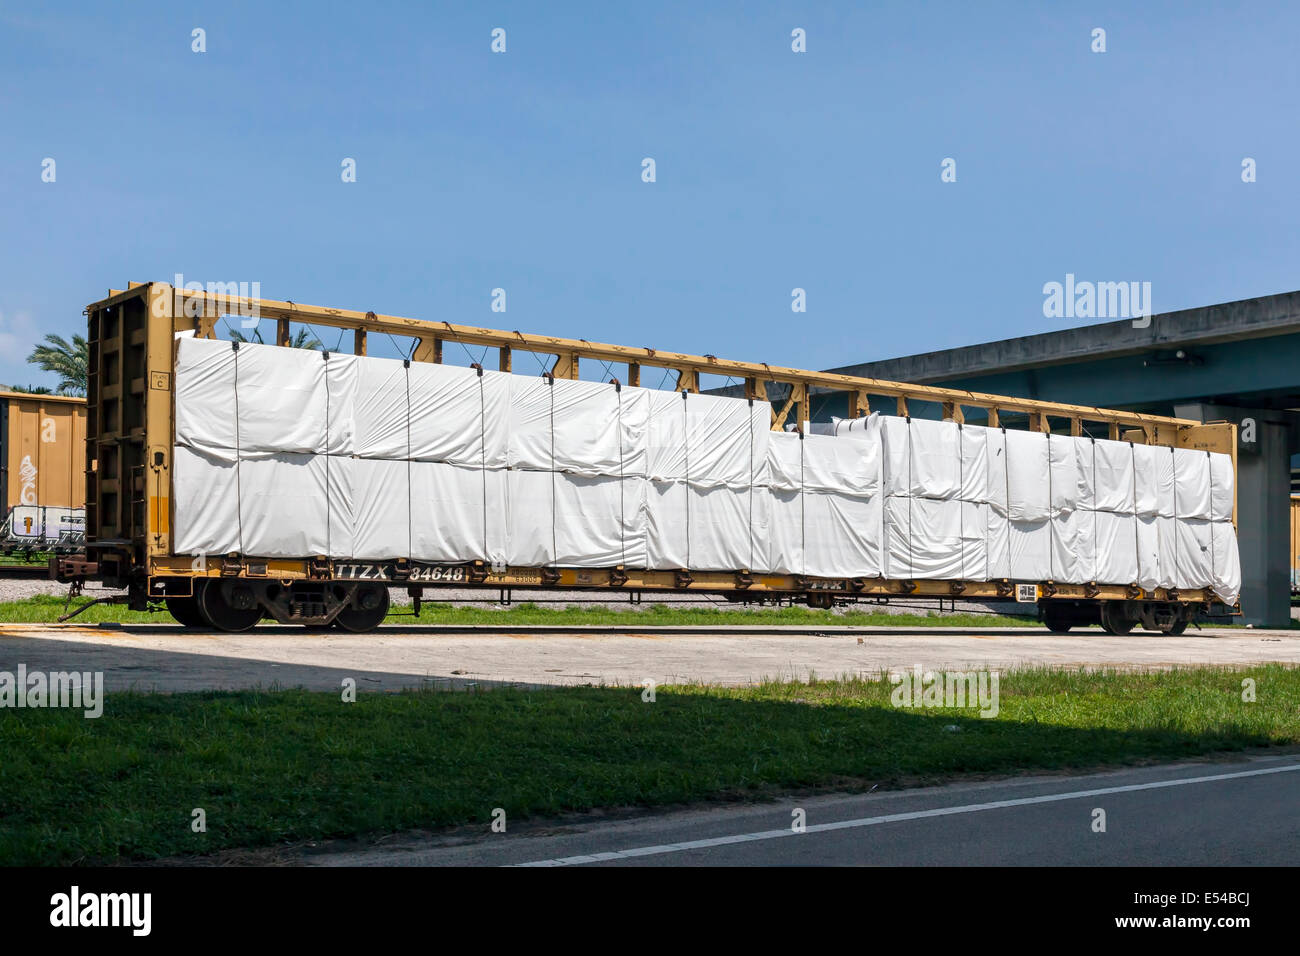 Des wagons de chemin de fer chargés, assis sur une voie de garage près du Fort Lauderdale, Floride, USA. Banque D'Images